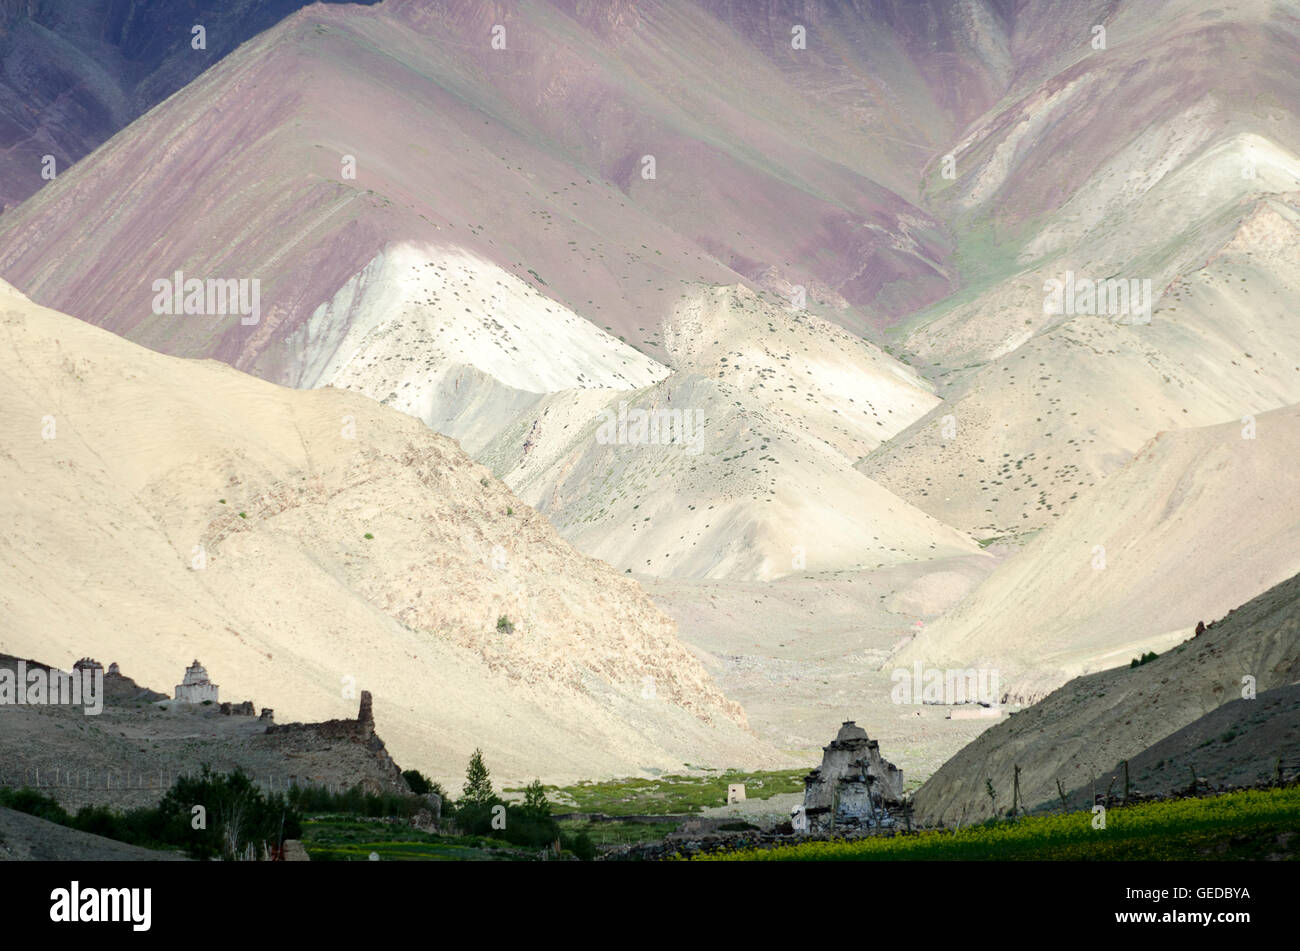 Light and shade on mountain ridges, Rumback,  Ladakh, Jammu and Kashmir, India Stock Photo